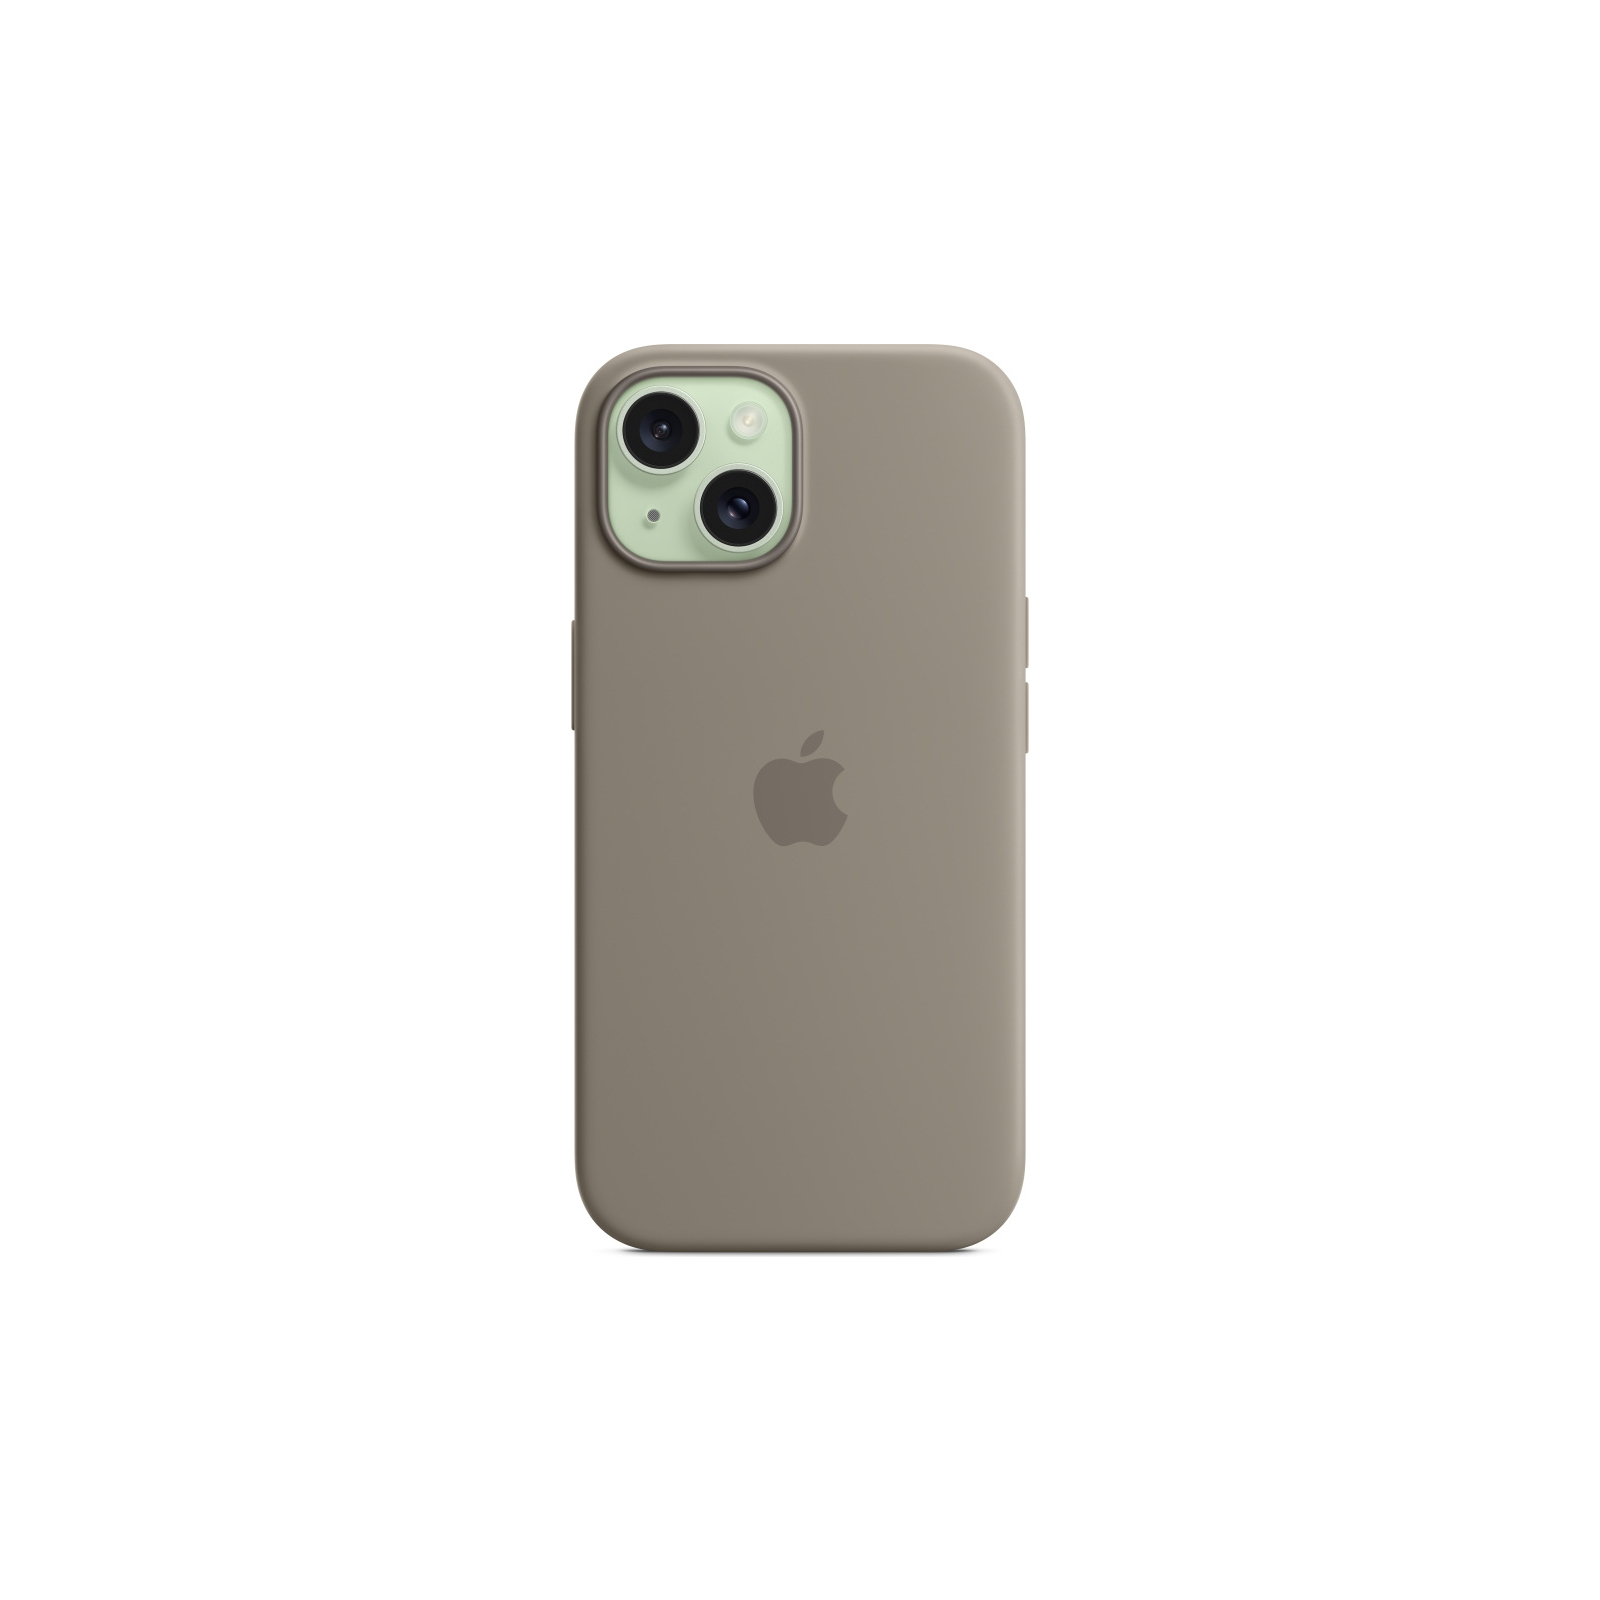 Чехол для мобильного телефона Apple iPhone 15 Silicone Case with MagSafe Winter Blue (MT0Y3ZM/A) изображение 4